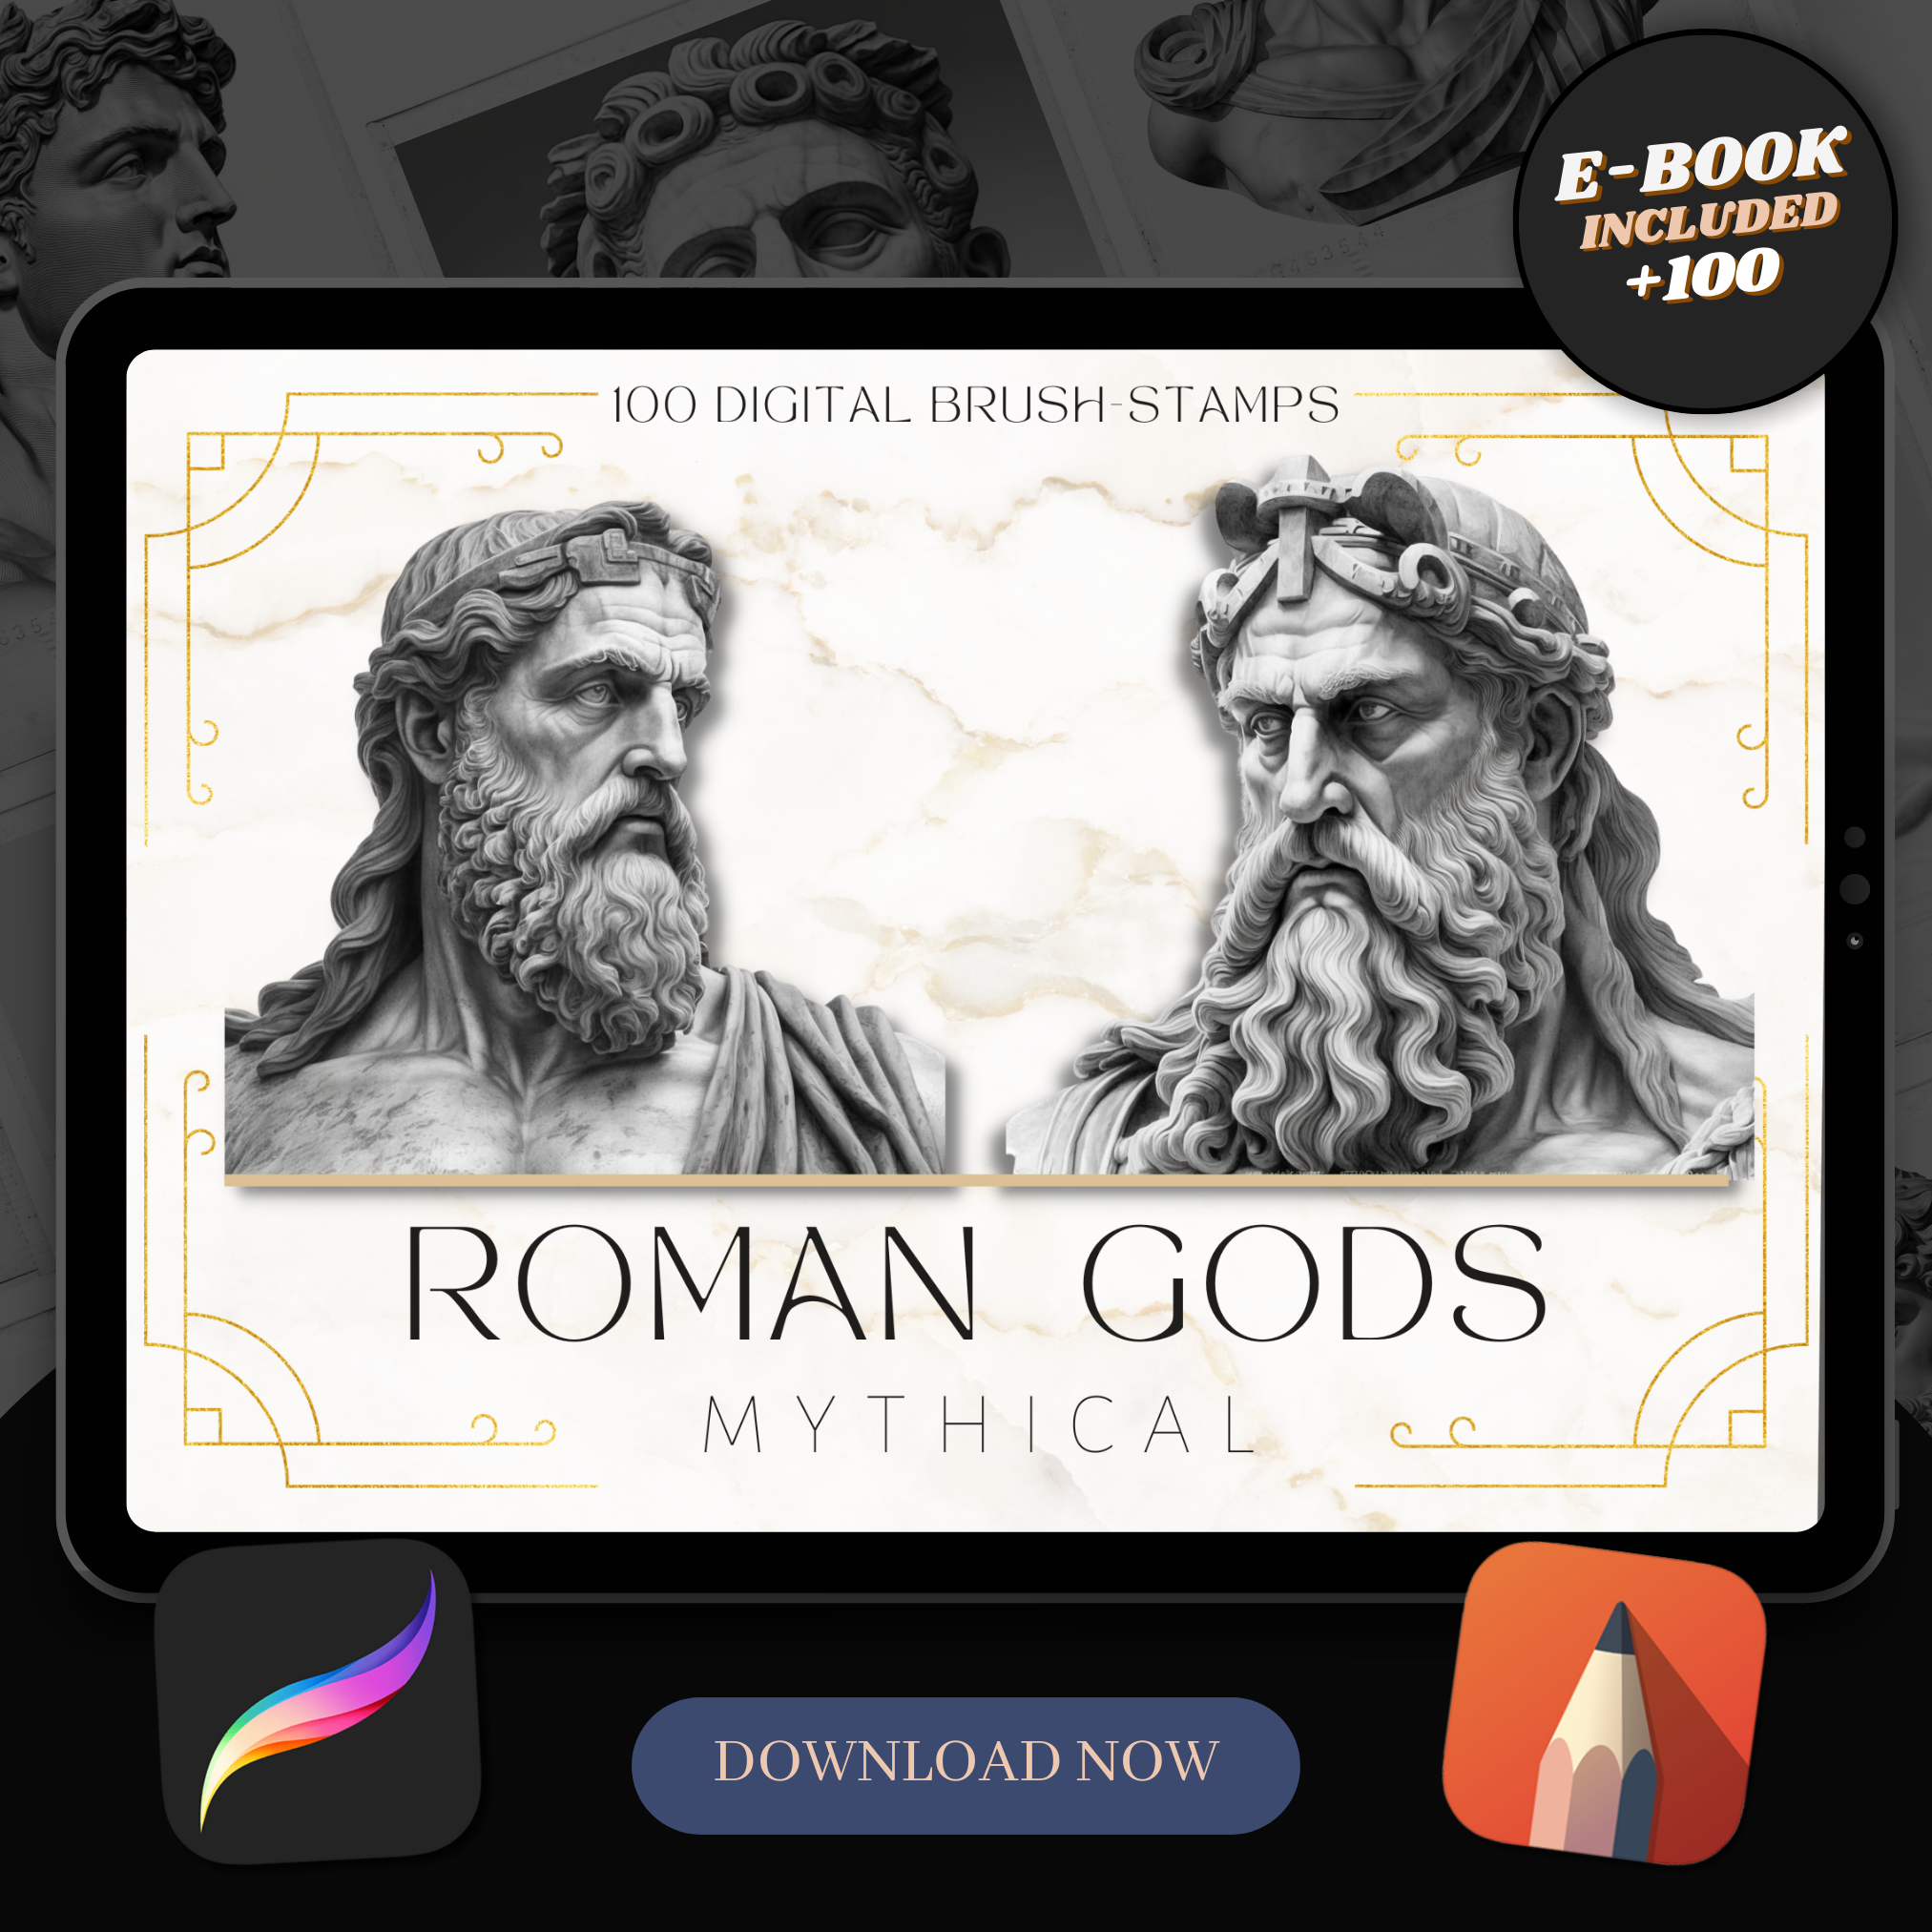 Colección de diseño digital de dioses romanos: 50 imágenes de Procreate y Sketchbook